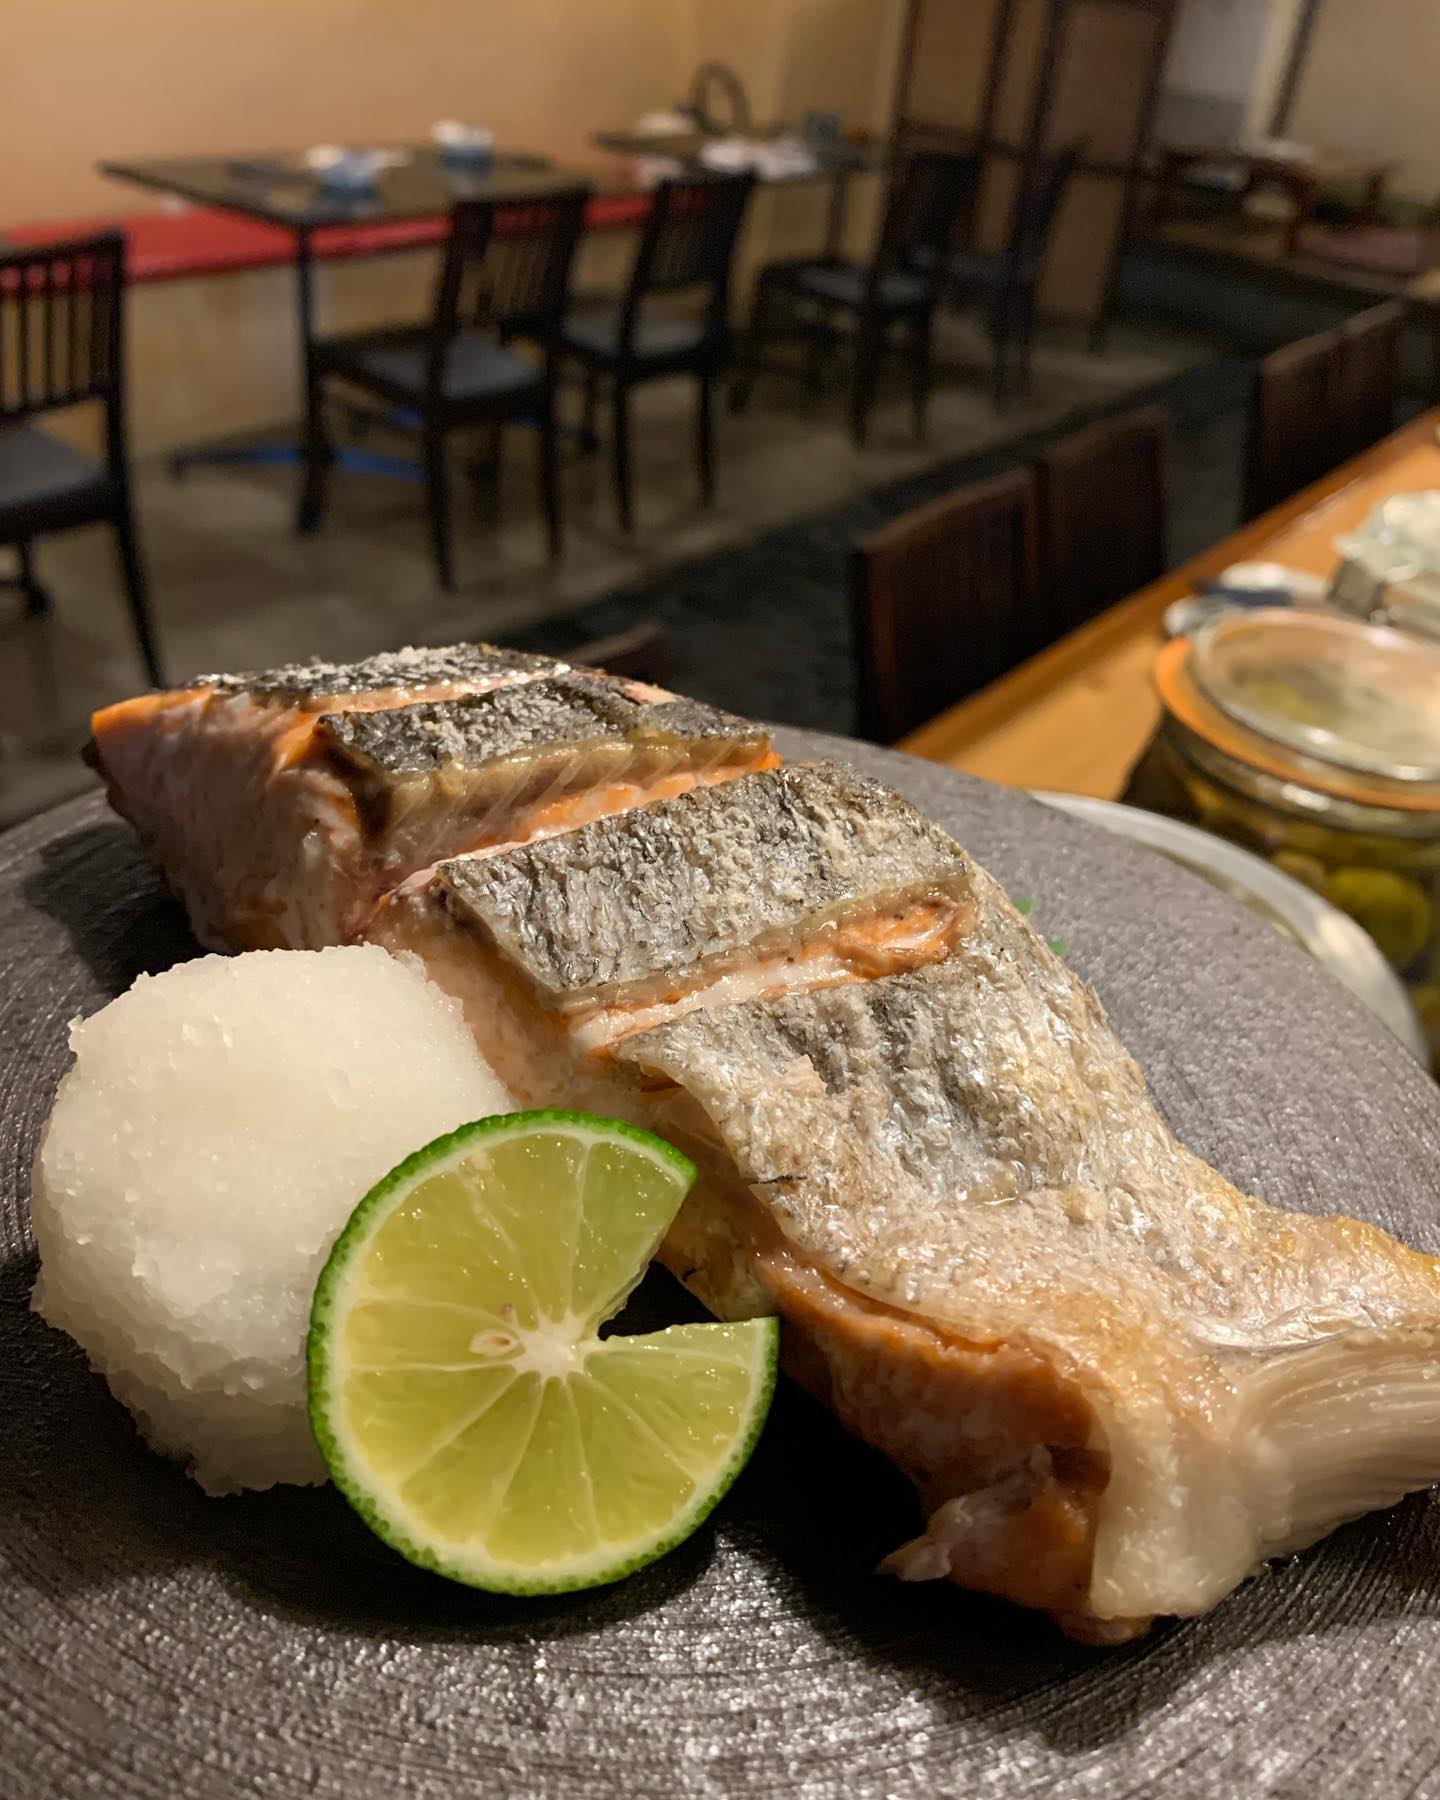 北海道から時期もの鮭届きました️
秋鮭を使ったシンプルかつ1番美味しい塩焼き
肉厚で食べ応え抜群
 数に限りがありますのでお早めに